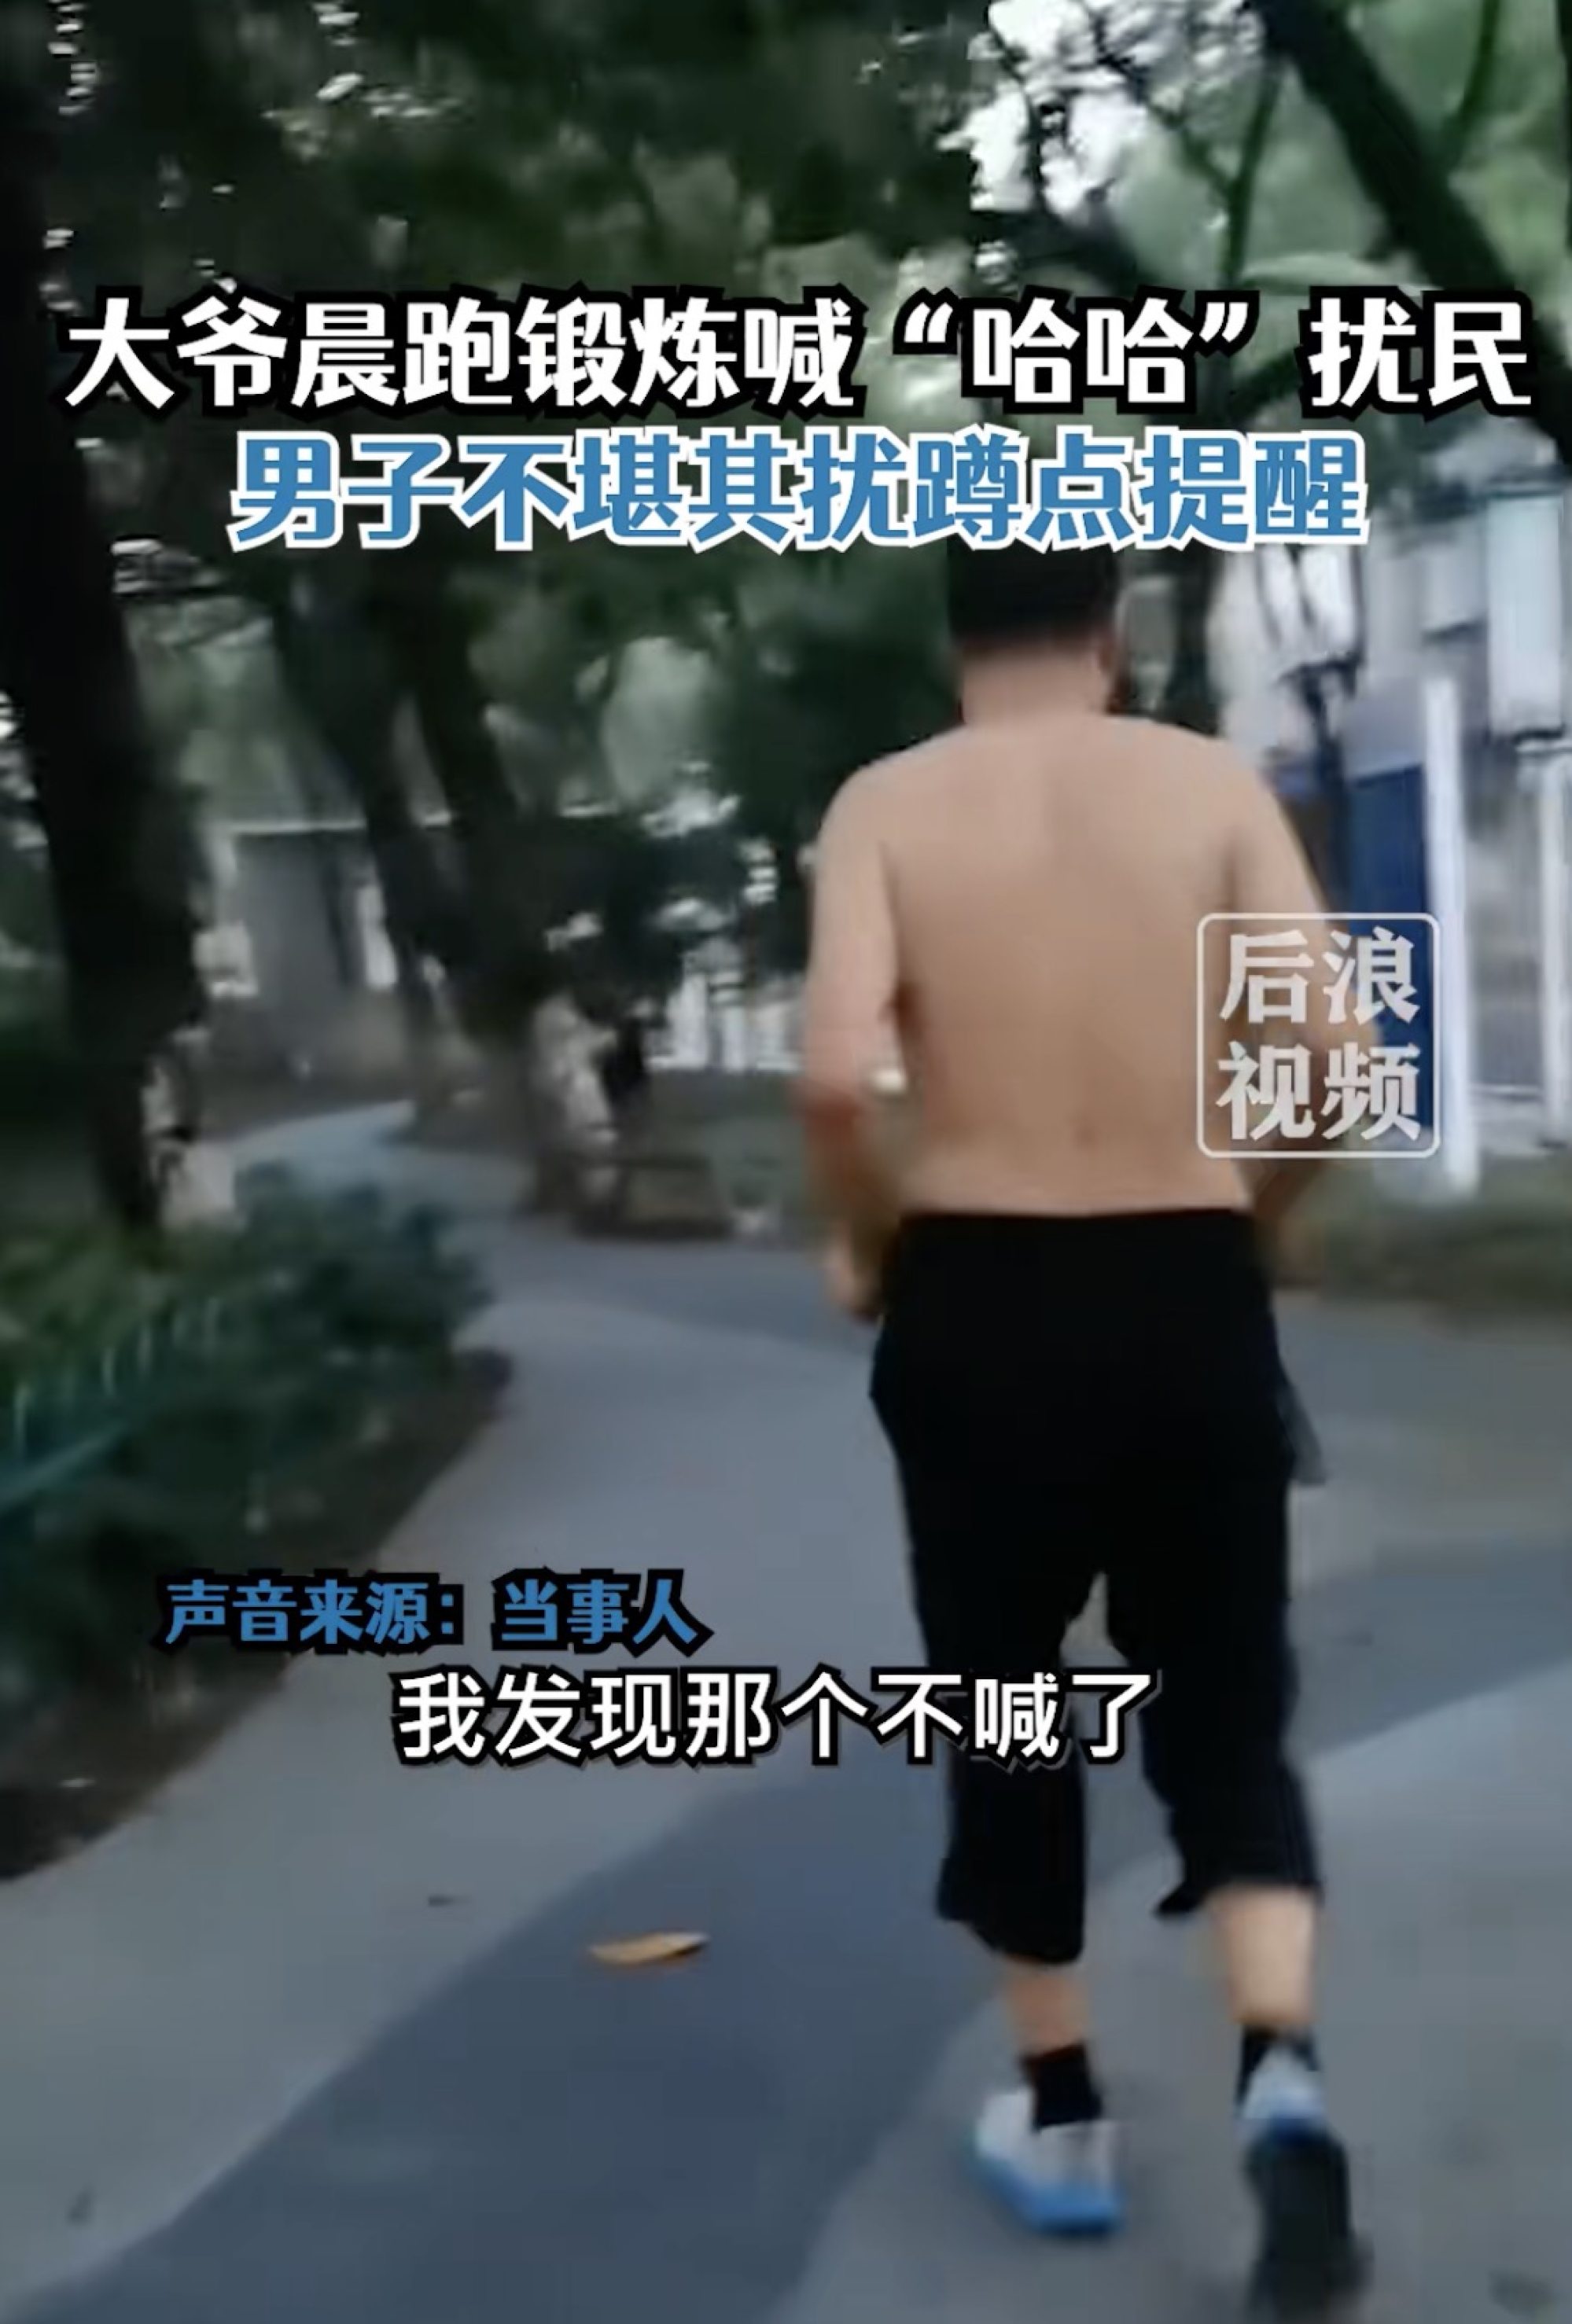 ‘Jaja, sí’: un hombre que se despierta a las 5 de la mañana todos los días con los extraños sonidos de ejercicio de un corredor anciano se enfrenta al generador de ruido, tocando la fibra sensible de muchos en línea en China.